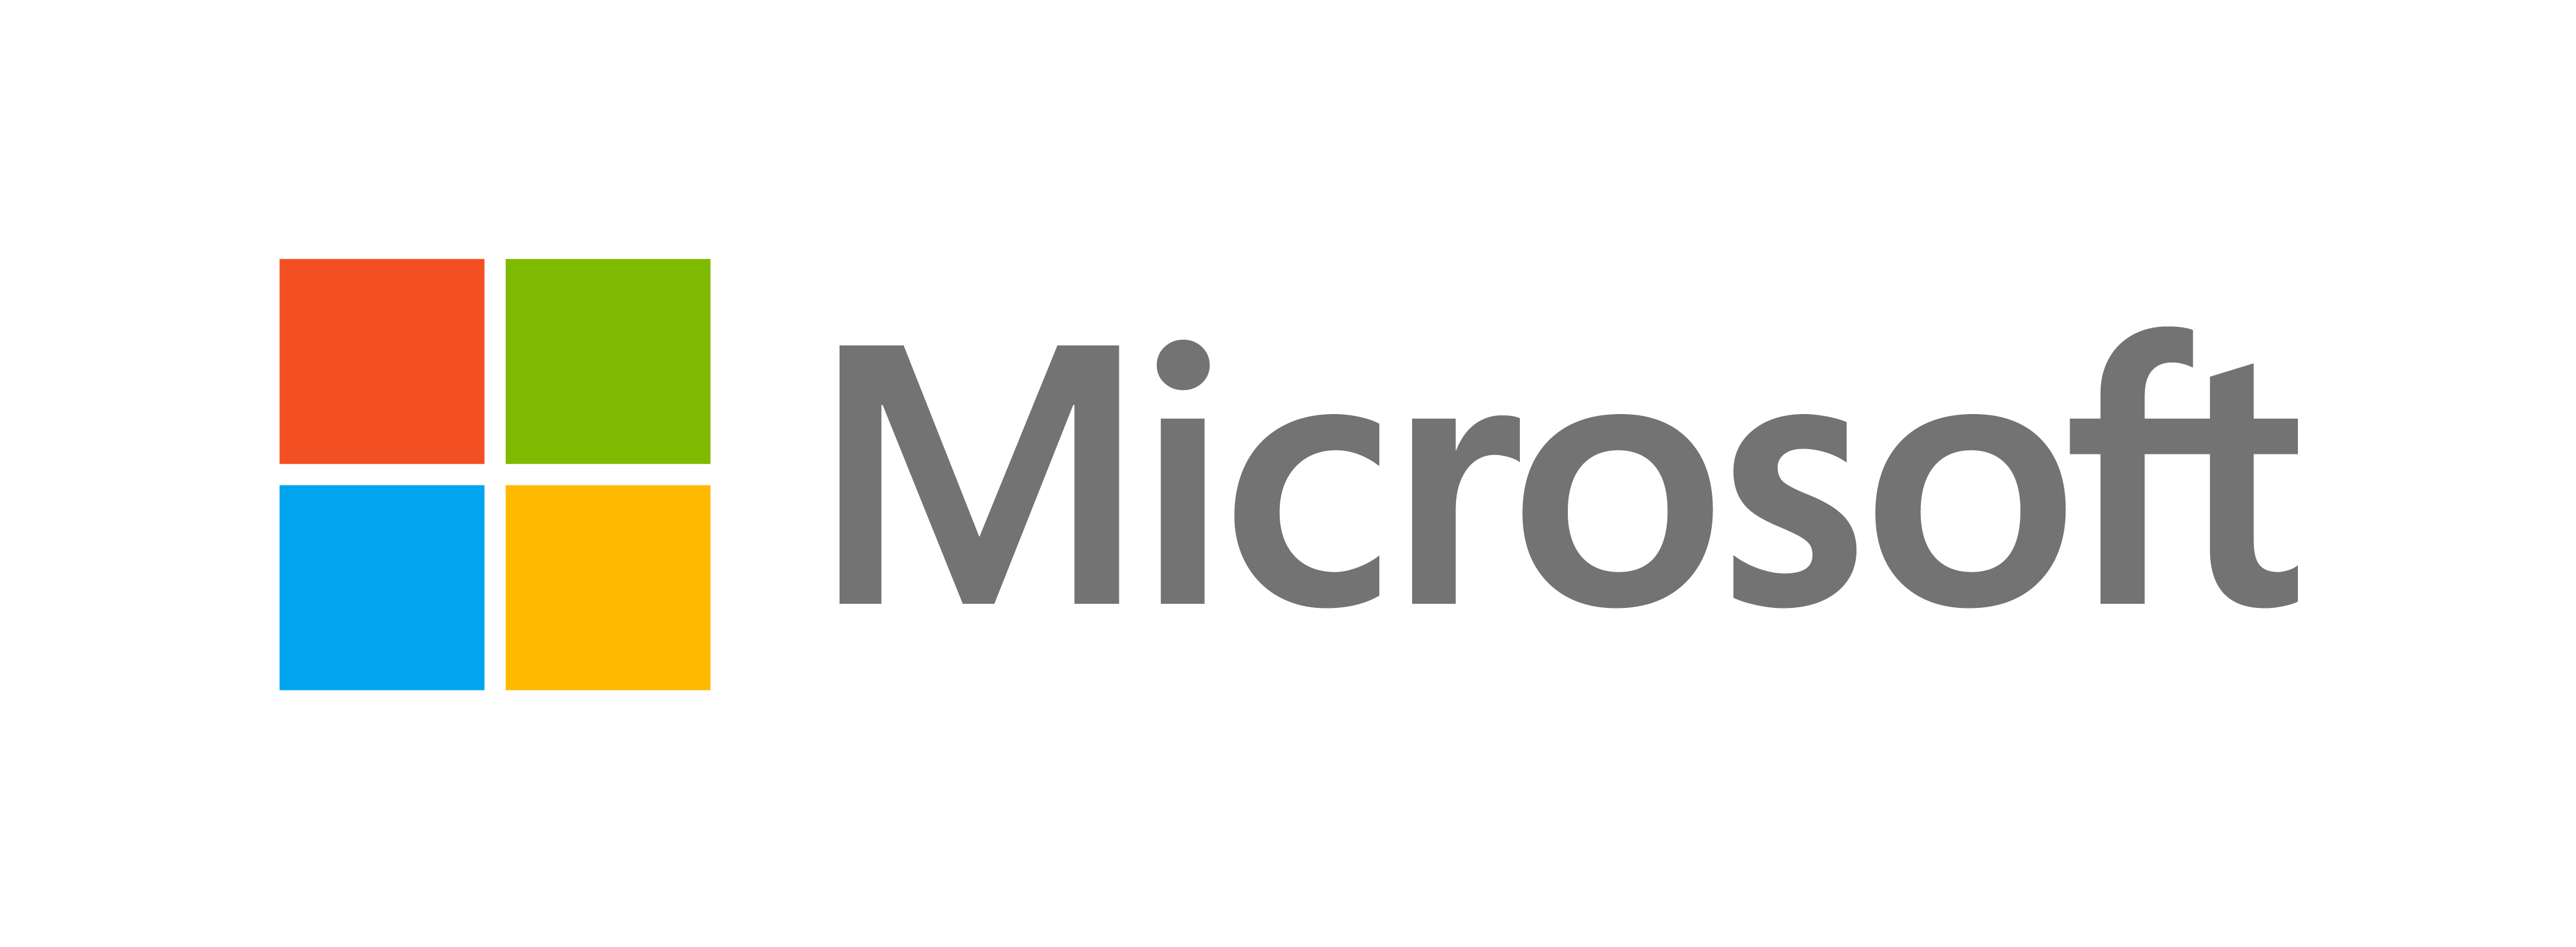 مایکروسافت از ظاهر جدیدی رونمایی کرد - وبلاگ رسمی مایکروسافت